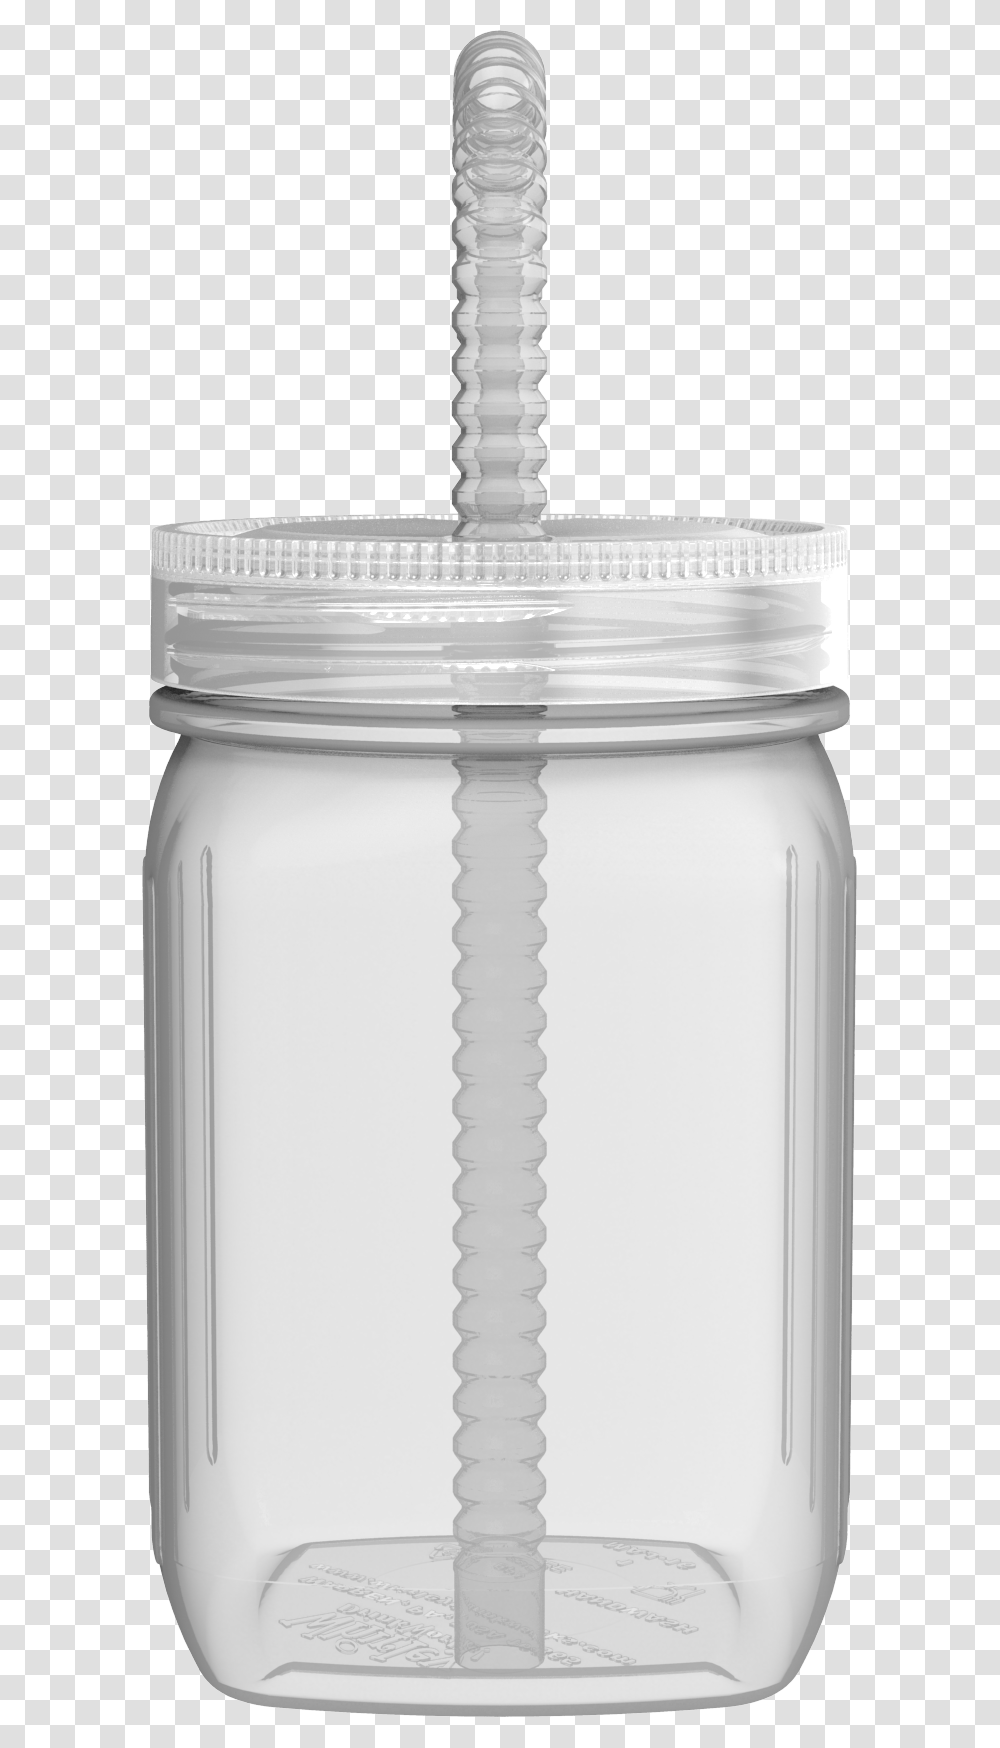 Clear Mason Jar Lid Lid, Milk, Beverage, Drink, Lamp Transparent Png